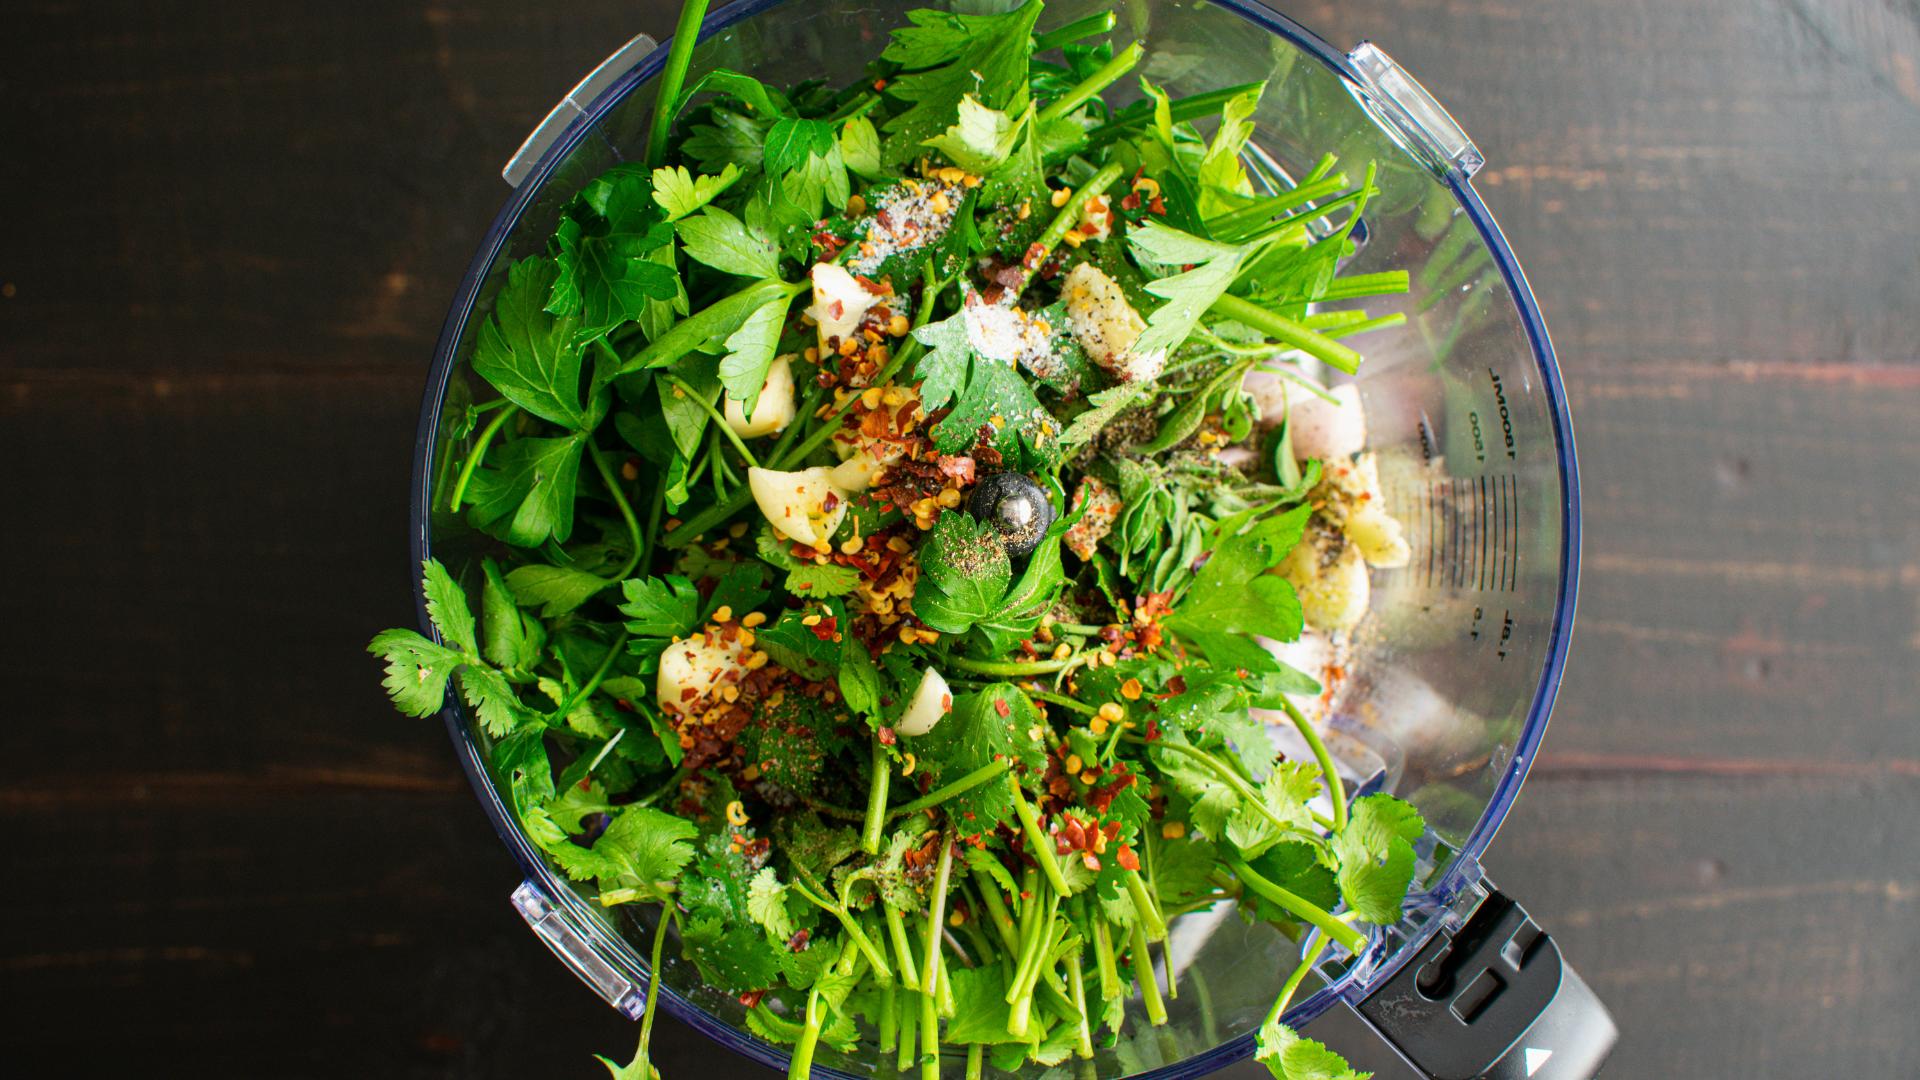 Make homemade cilantro in a food processor.